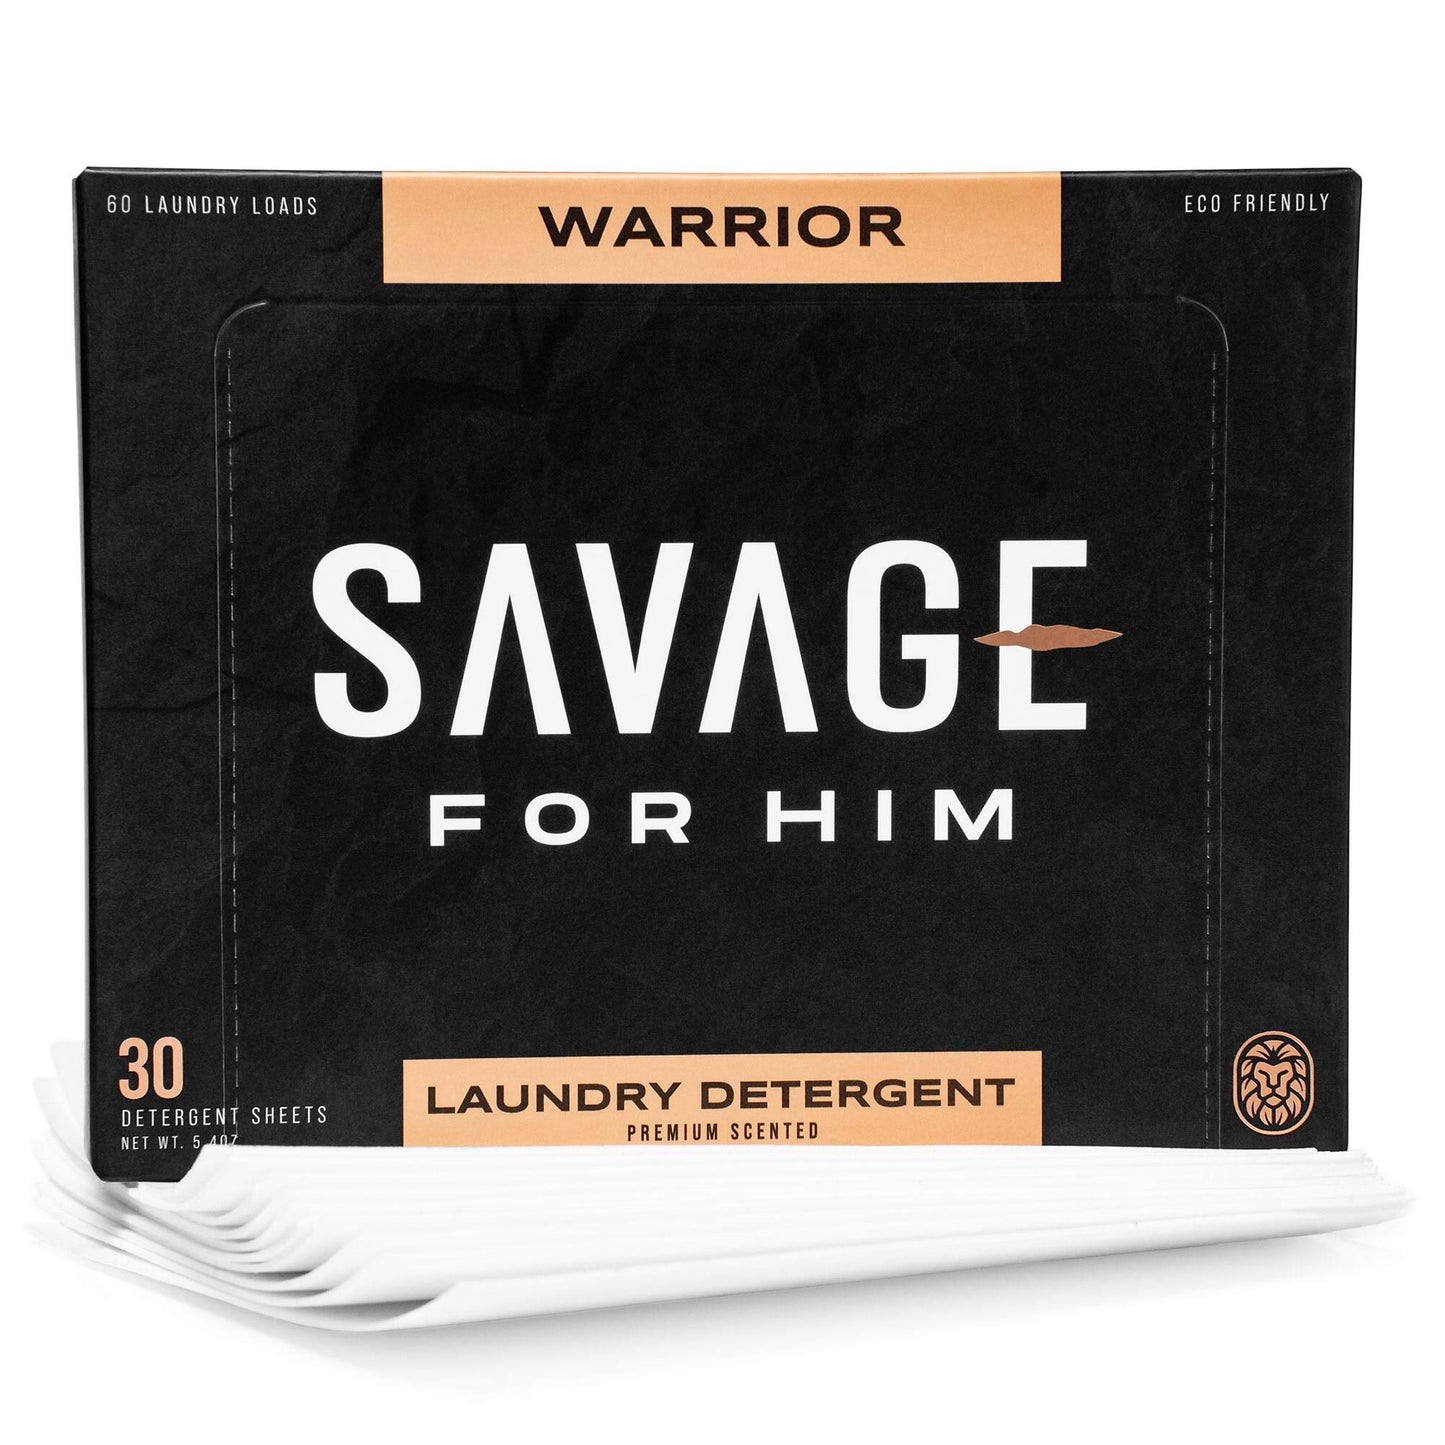 Warrior Detergent Sheets